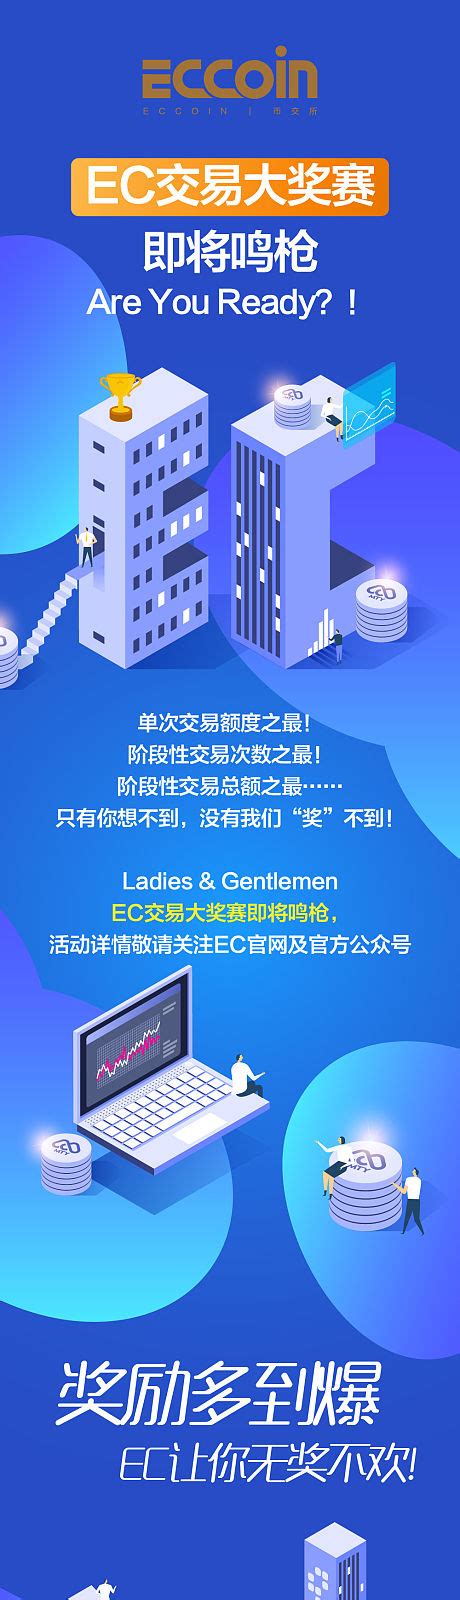 2022互联网技术与应用博览会 2022年7月21日 深圳国际会展中心--零距离展会网